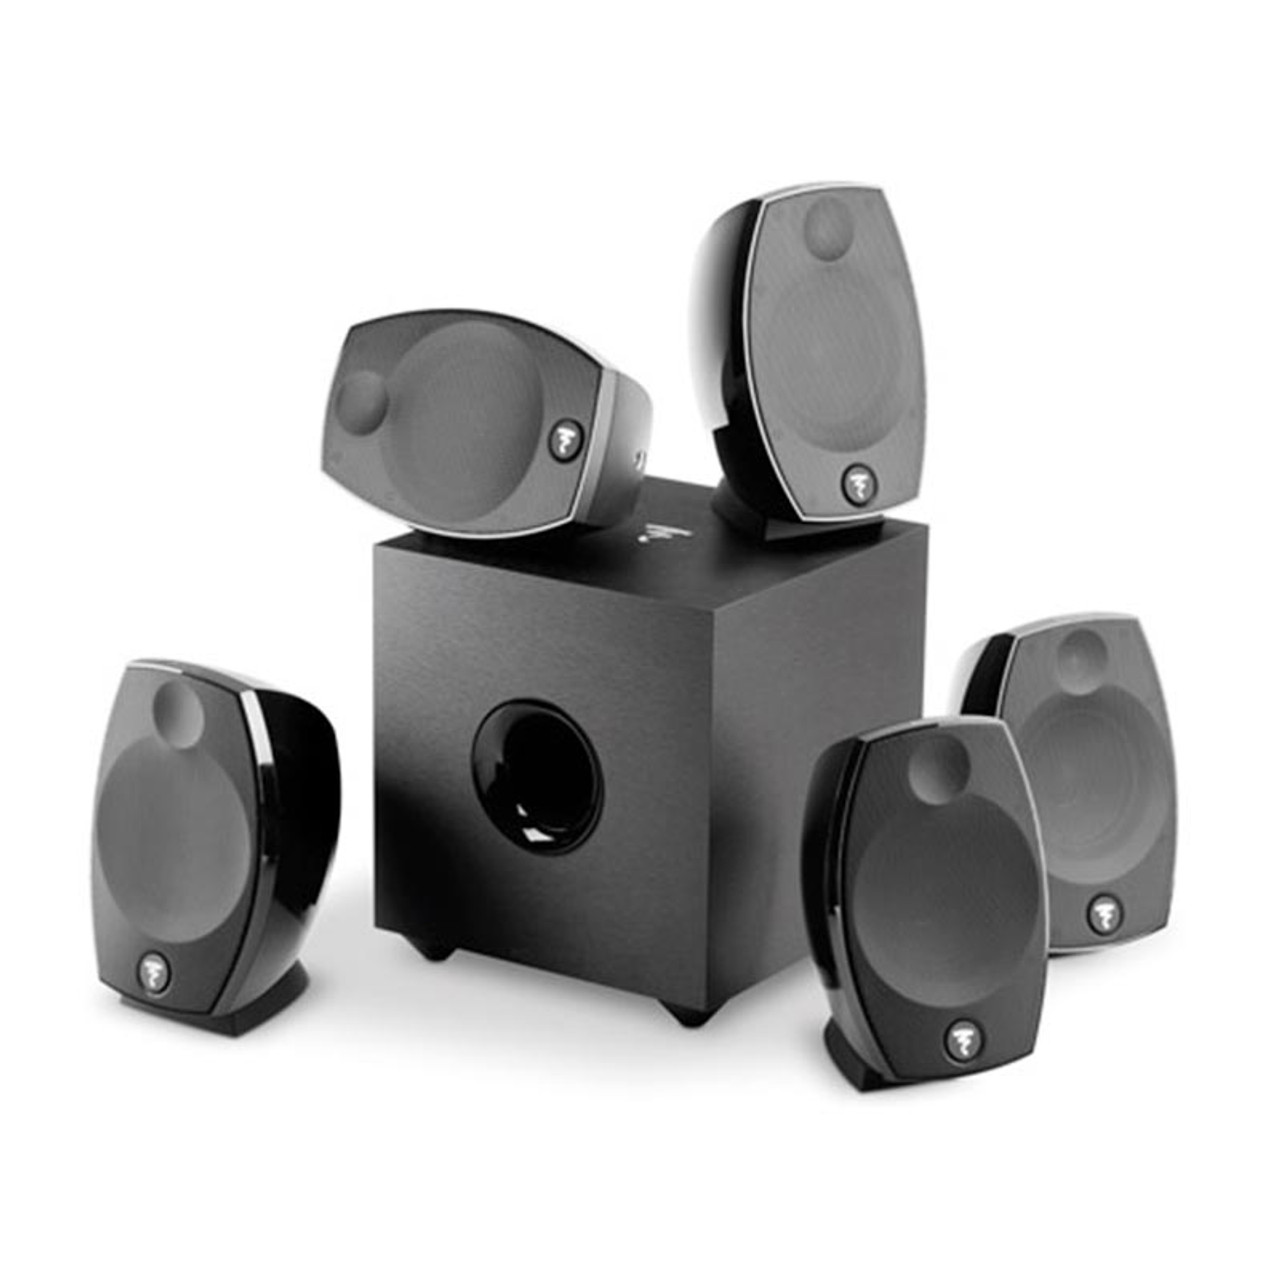 fonds schoonmaken alliantie Focal Sib Evo 5.1 Home Theater Speaker System - Open Box - Creative Audio